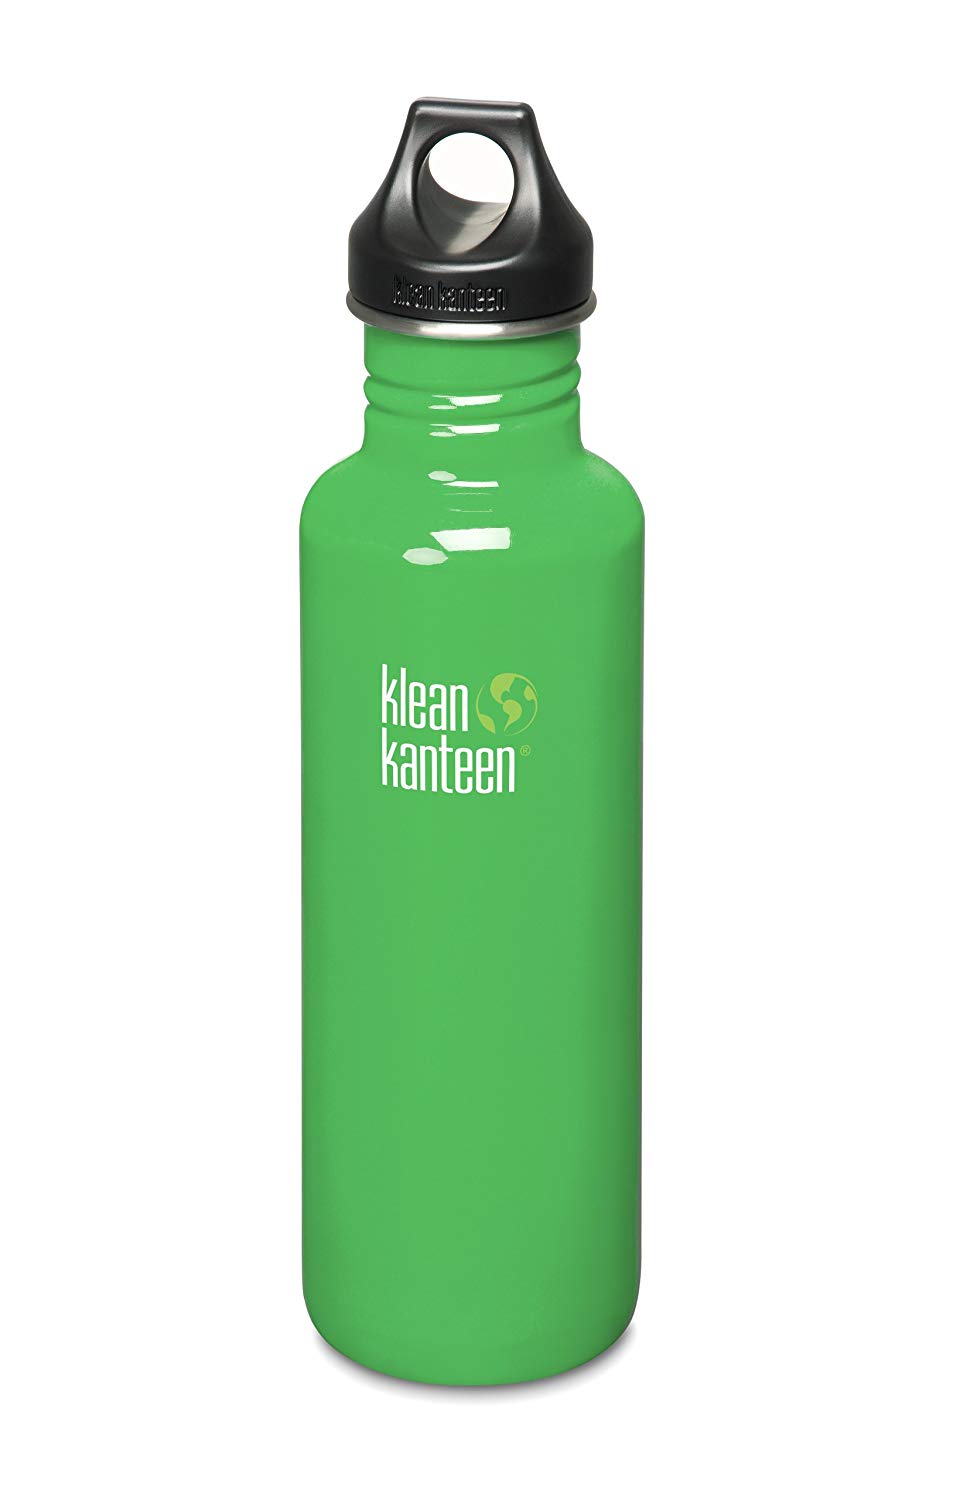 Kleen Kanteen Water Bottle